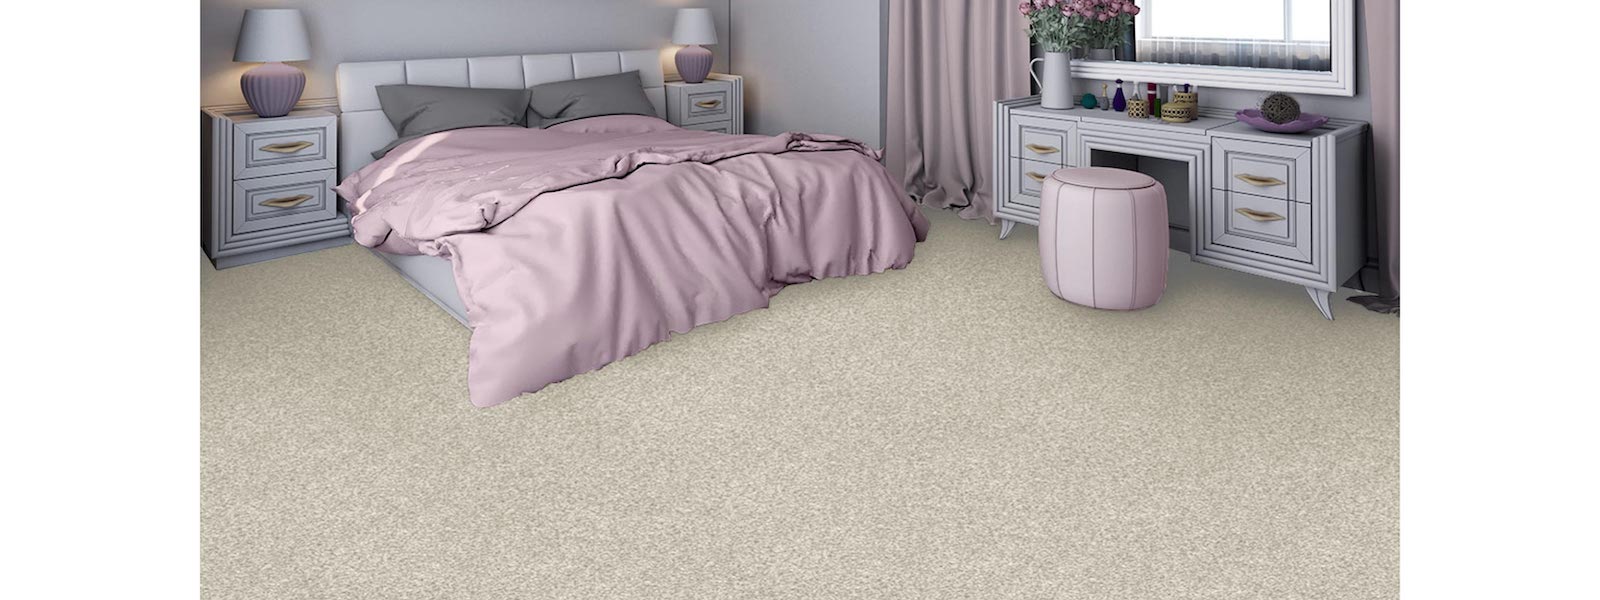 bedroom cream carpet